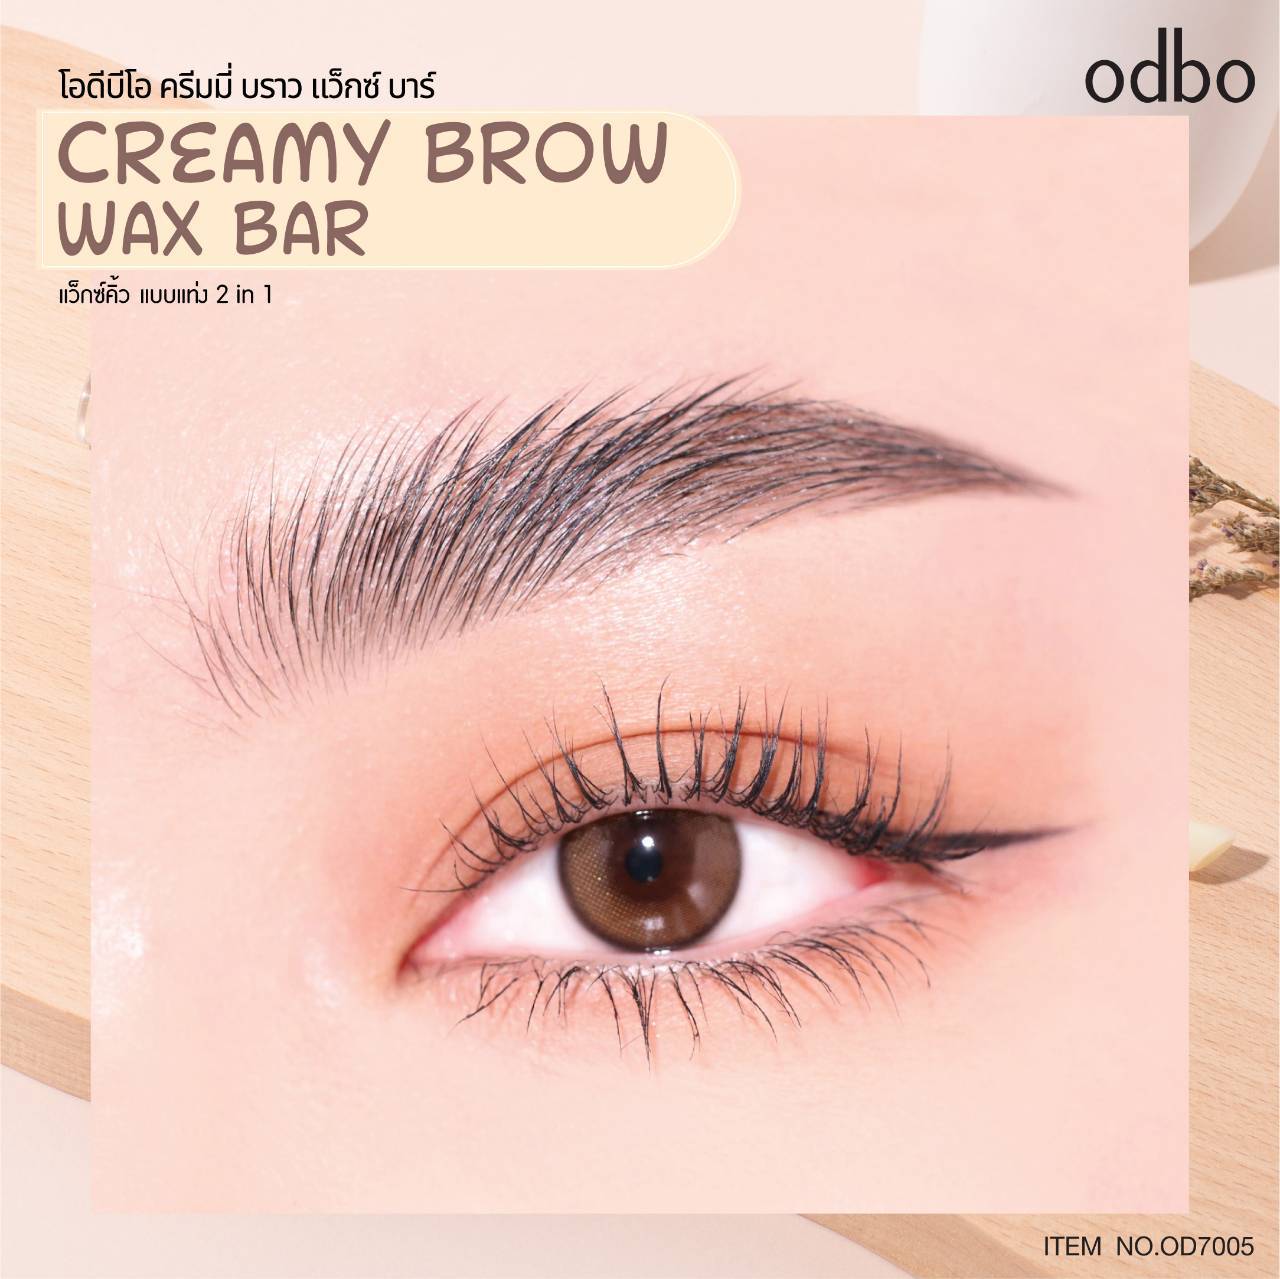 Odbo Creamy Brow Wax Bar #OD7005 : โอดีบีโอ ครีมมี่ บราว แว็กซ์ บาร์ ปัดคิ้ว เขียนคิ้ว x 1 ชิ้น